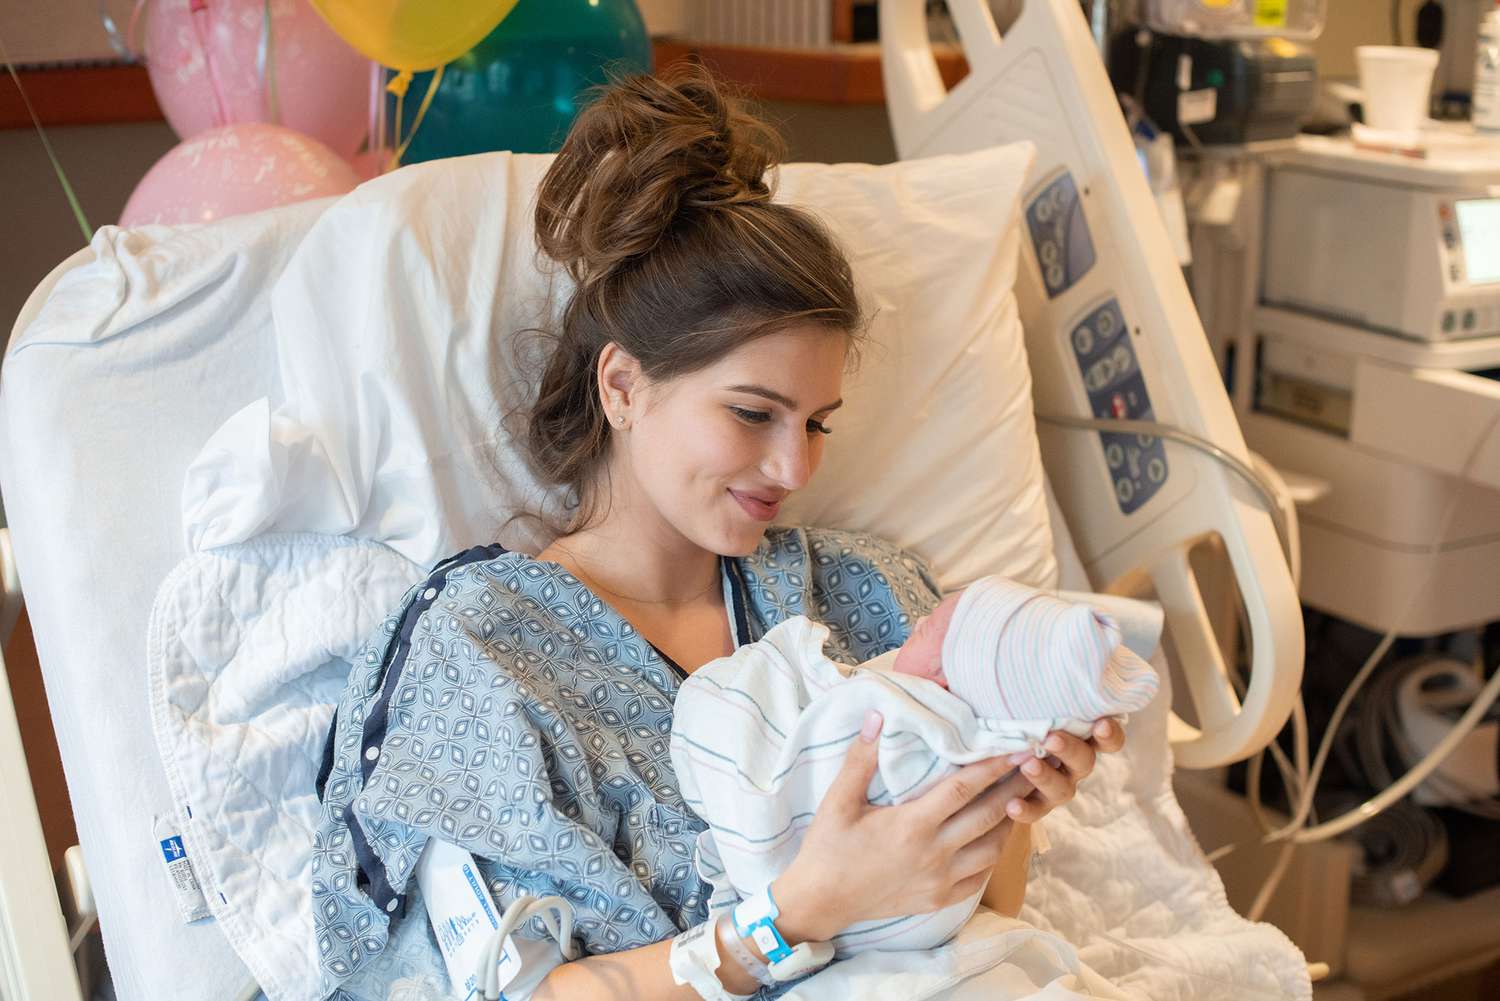 Carlin Stewart and Evan Stewart's newborn